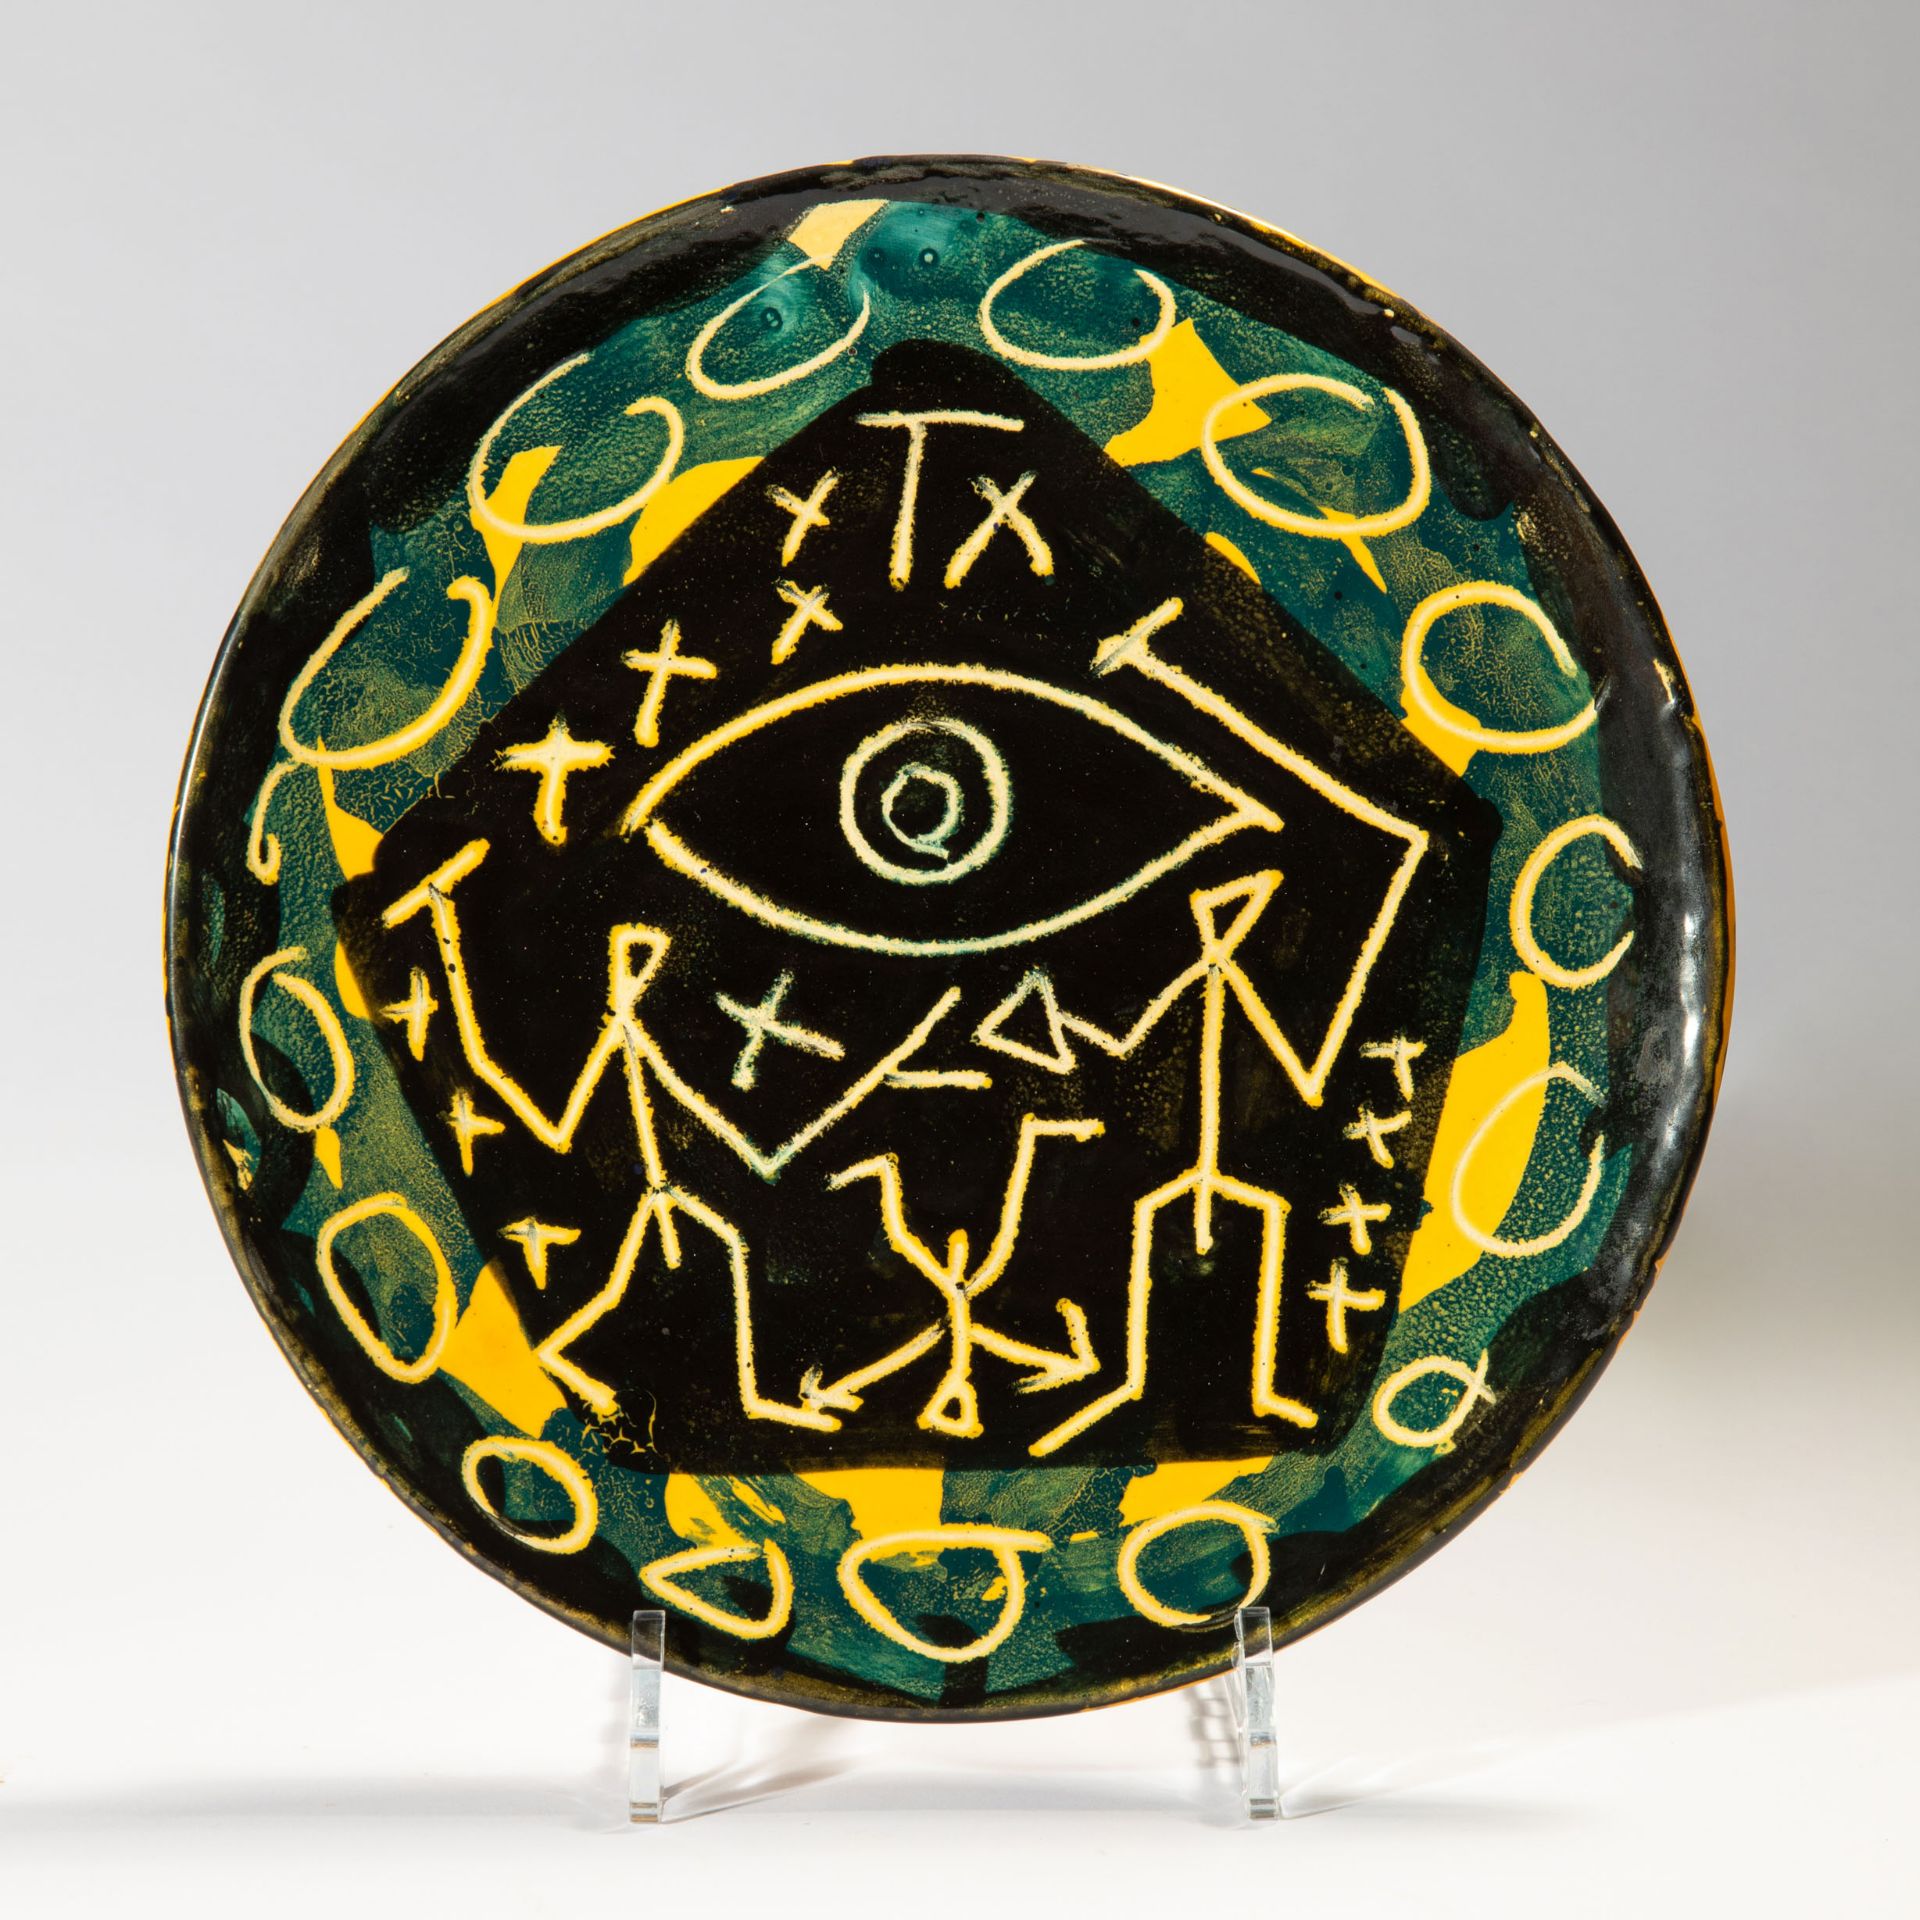 A.R. Penck*, Plate, ceramics